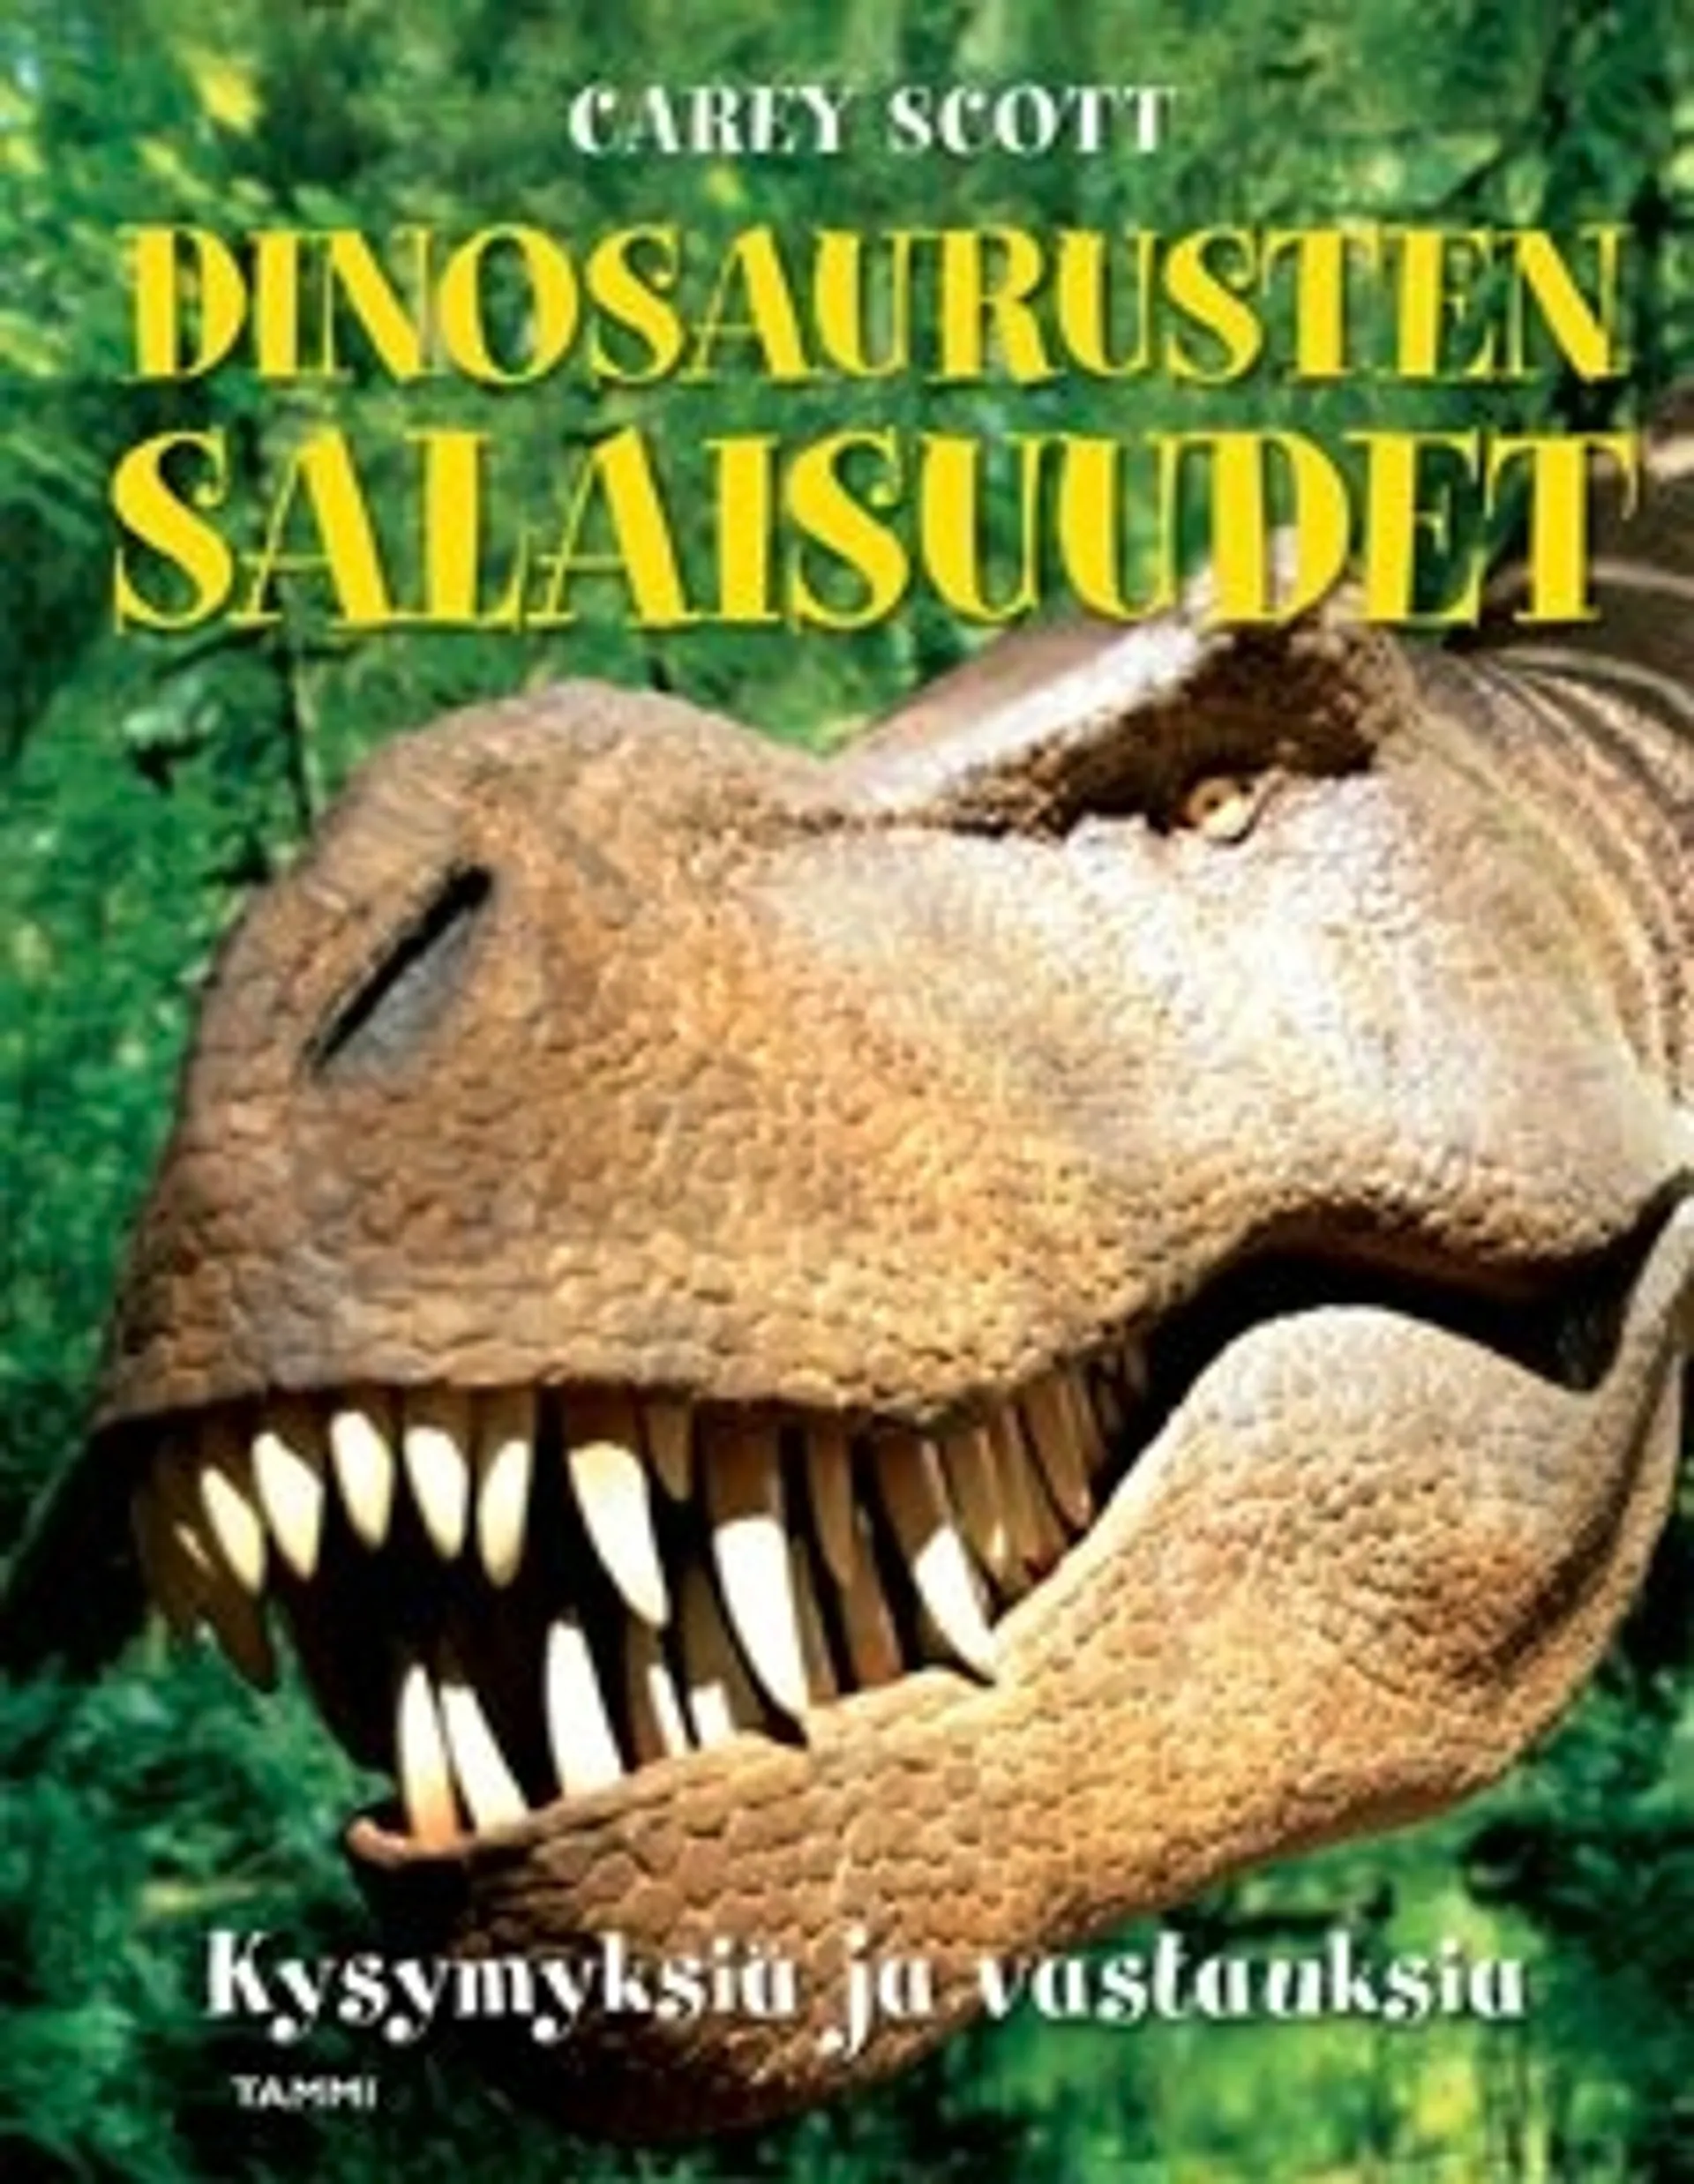 Dinosaurusten salaisuudet